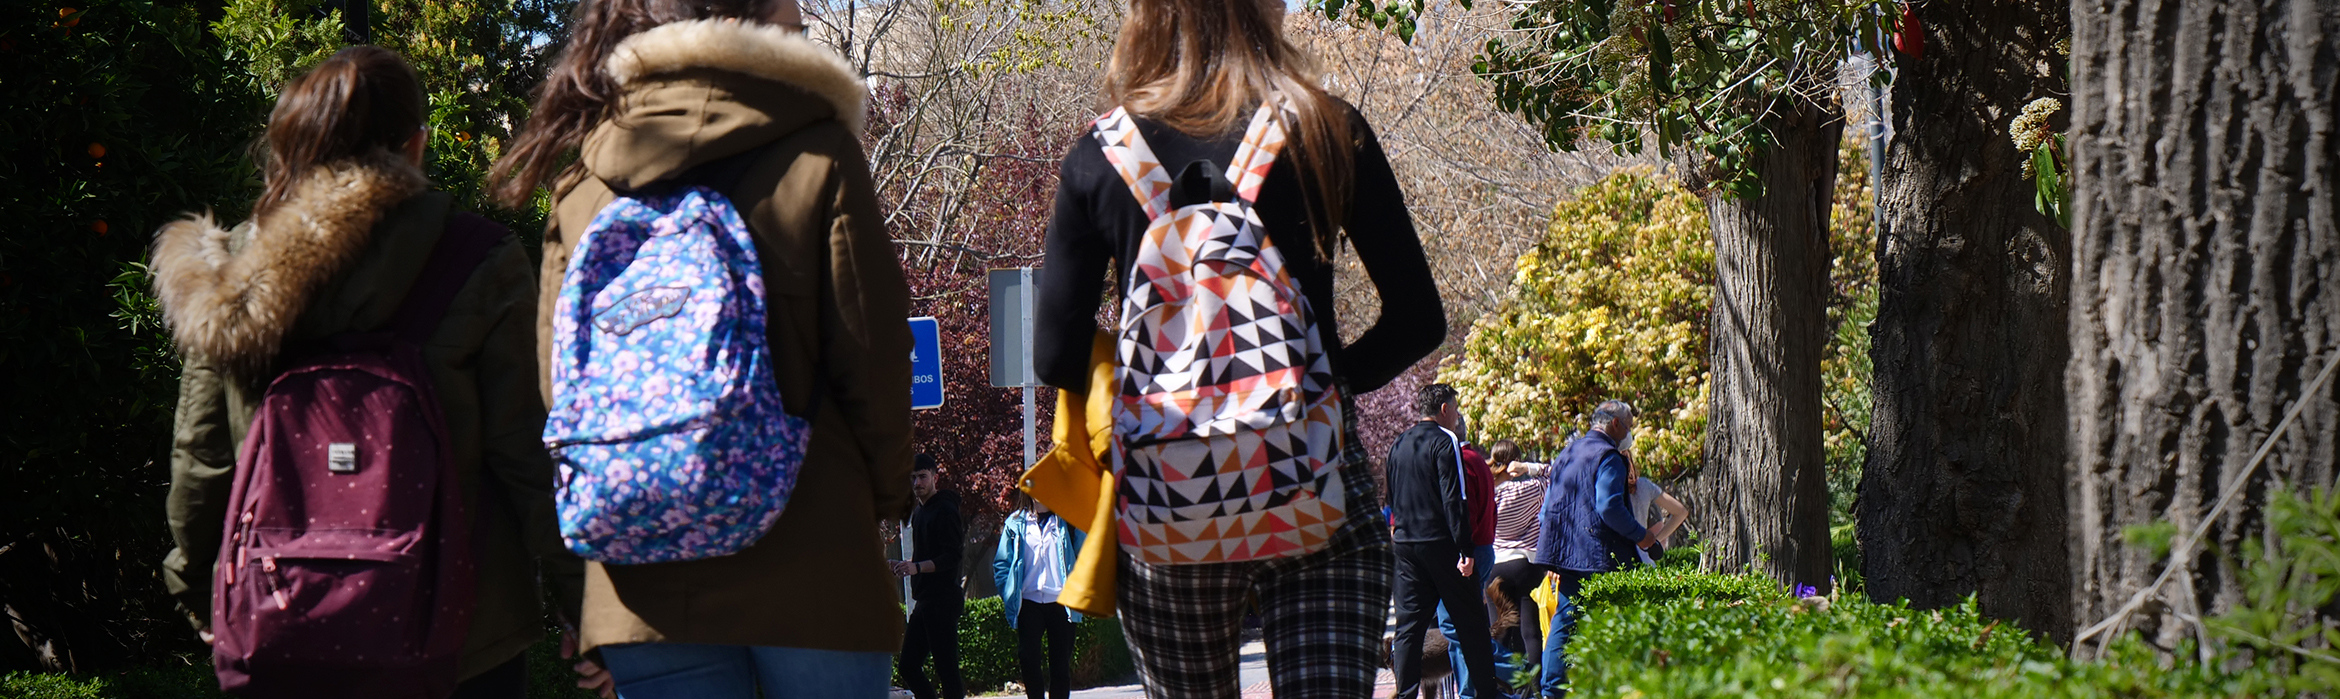 Estudiantes por los paseillos universitarios en el campus de Fuentenueva